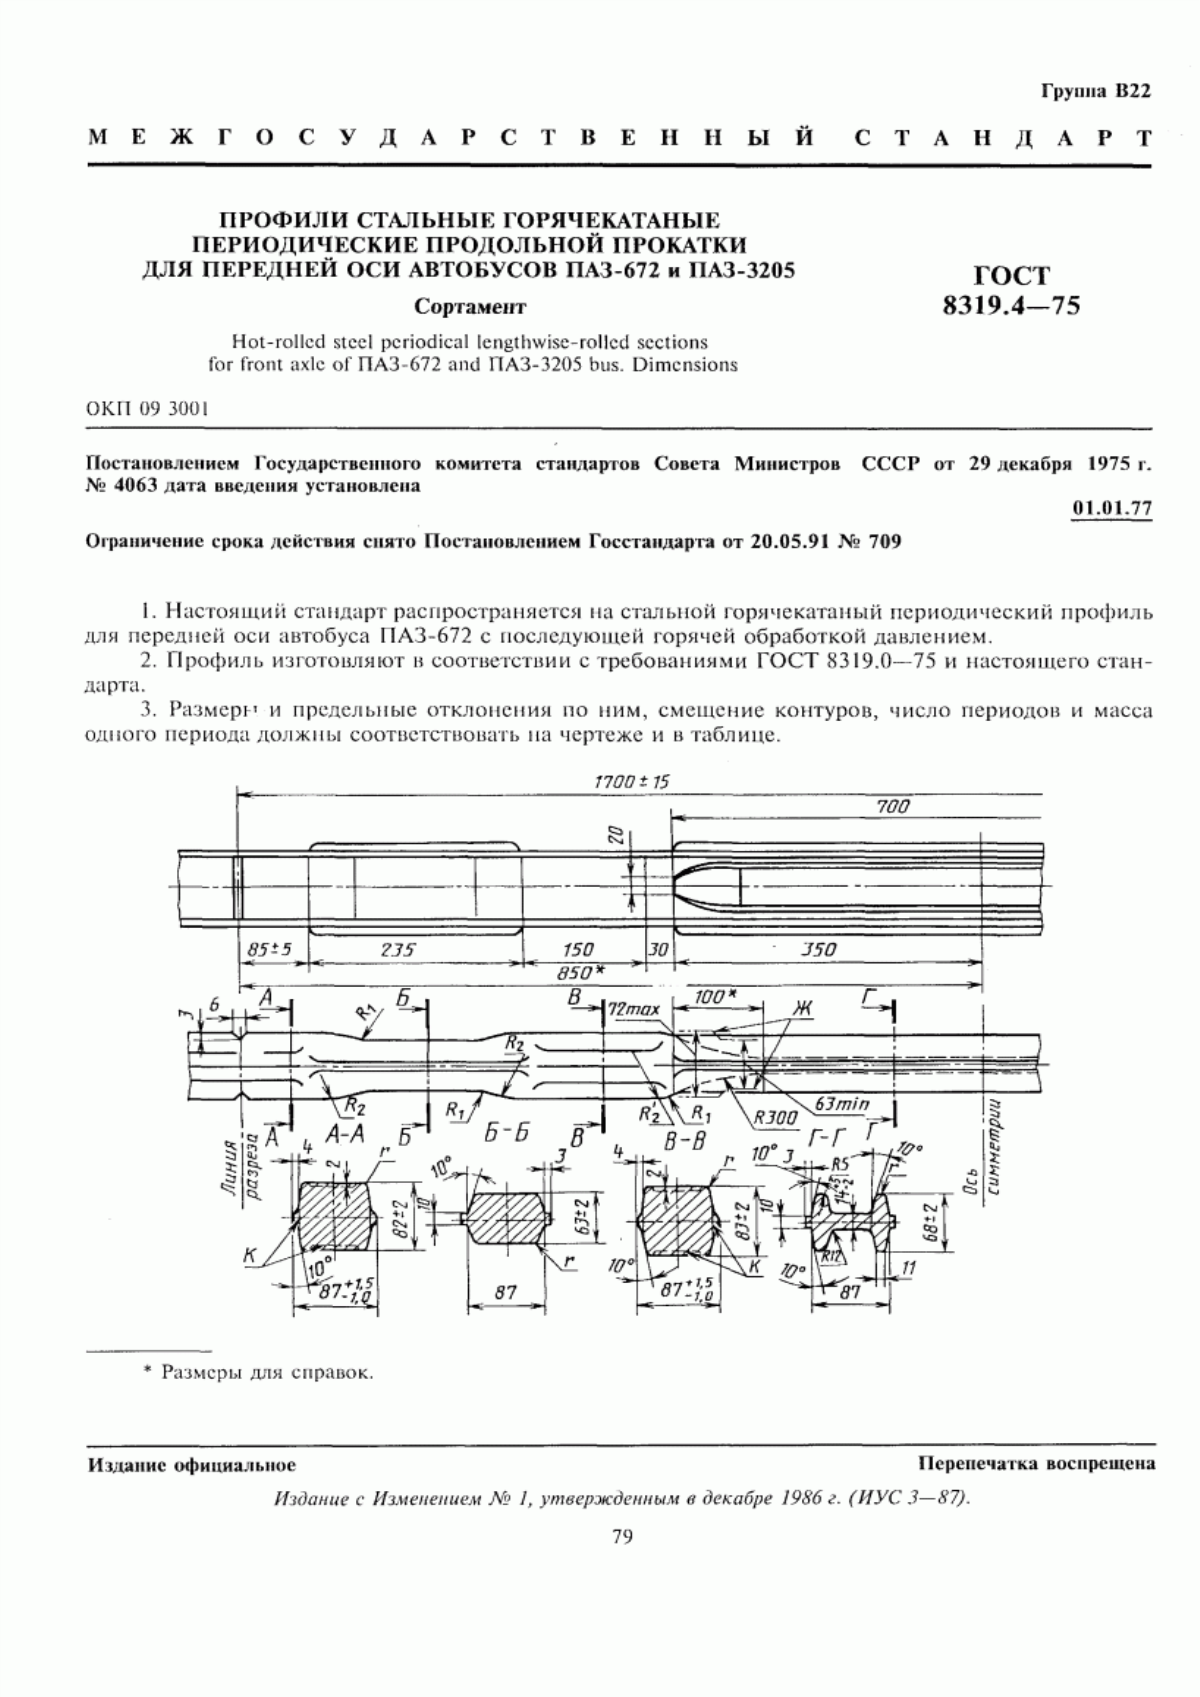 ГОСТ 8319.4-75 Профили стальные горячекатаные периодические продольной прокатки для передней оси автобусов ПАЗ-672 и ПАЗ-3205. Сортамент